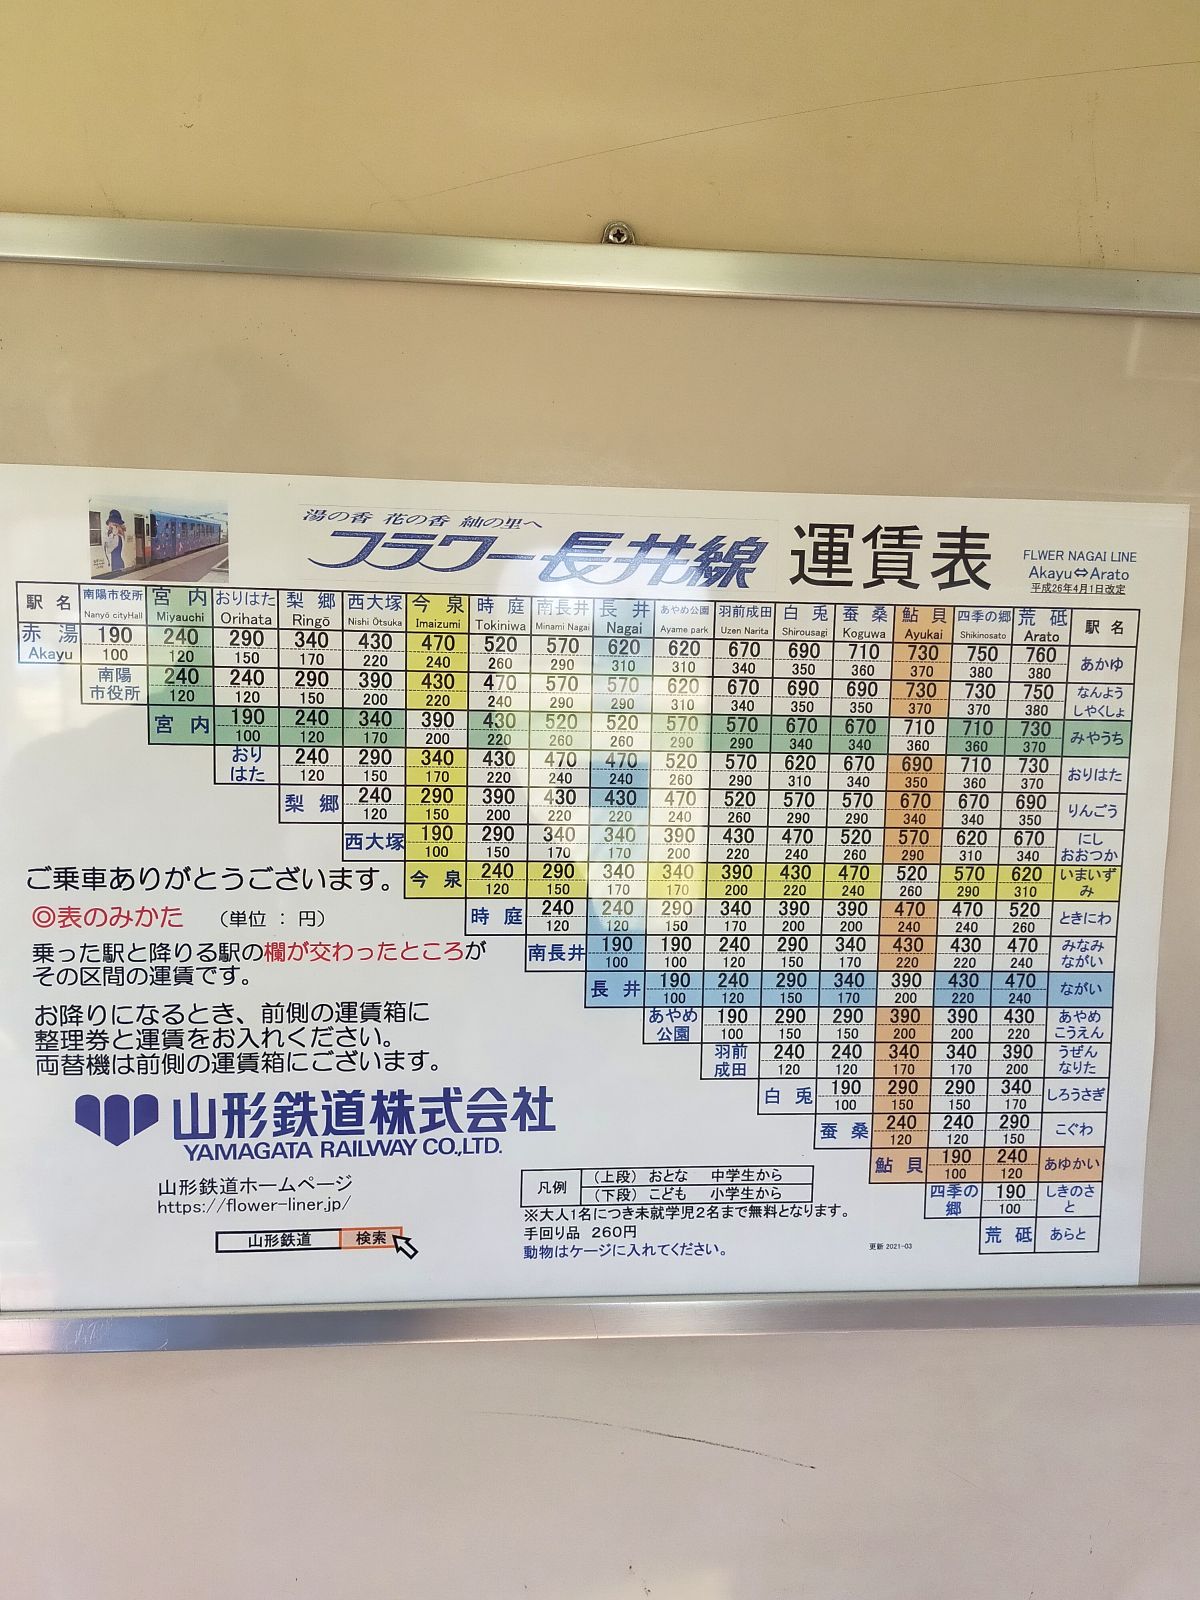 フラワー長井線運賃表